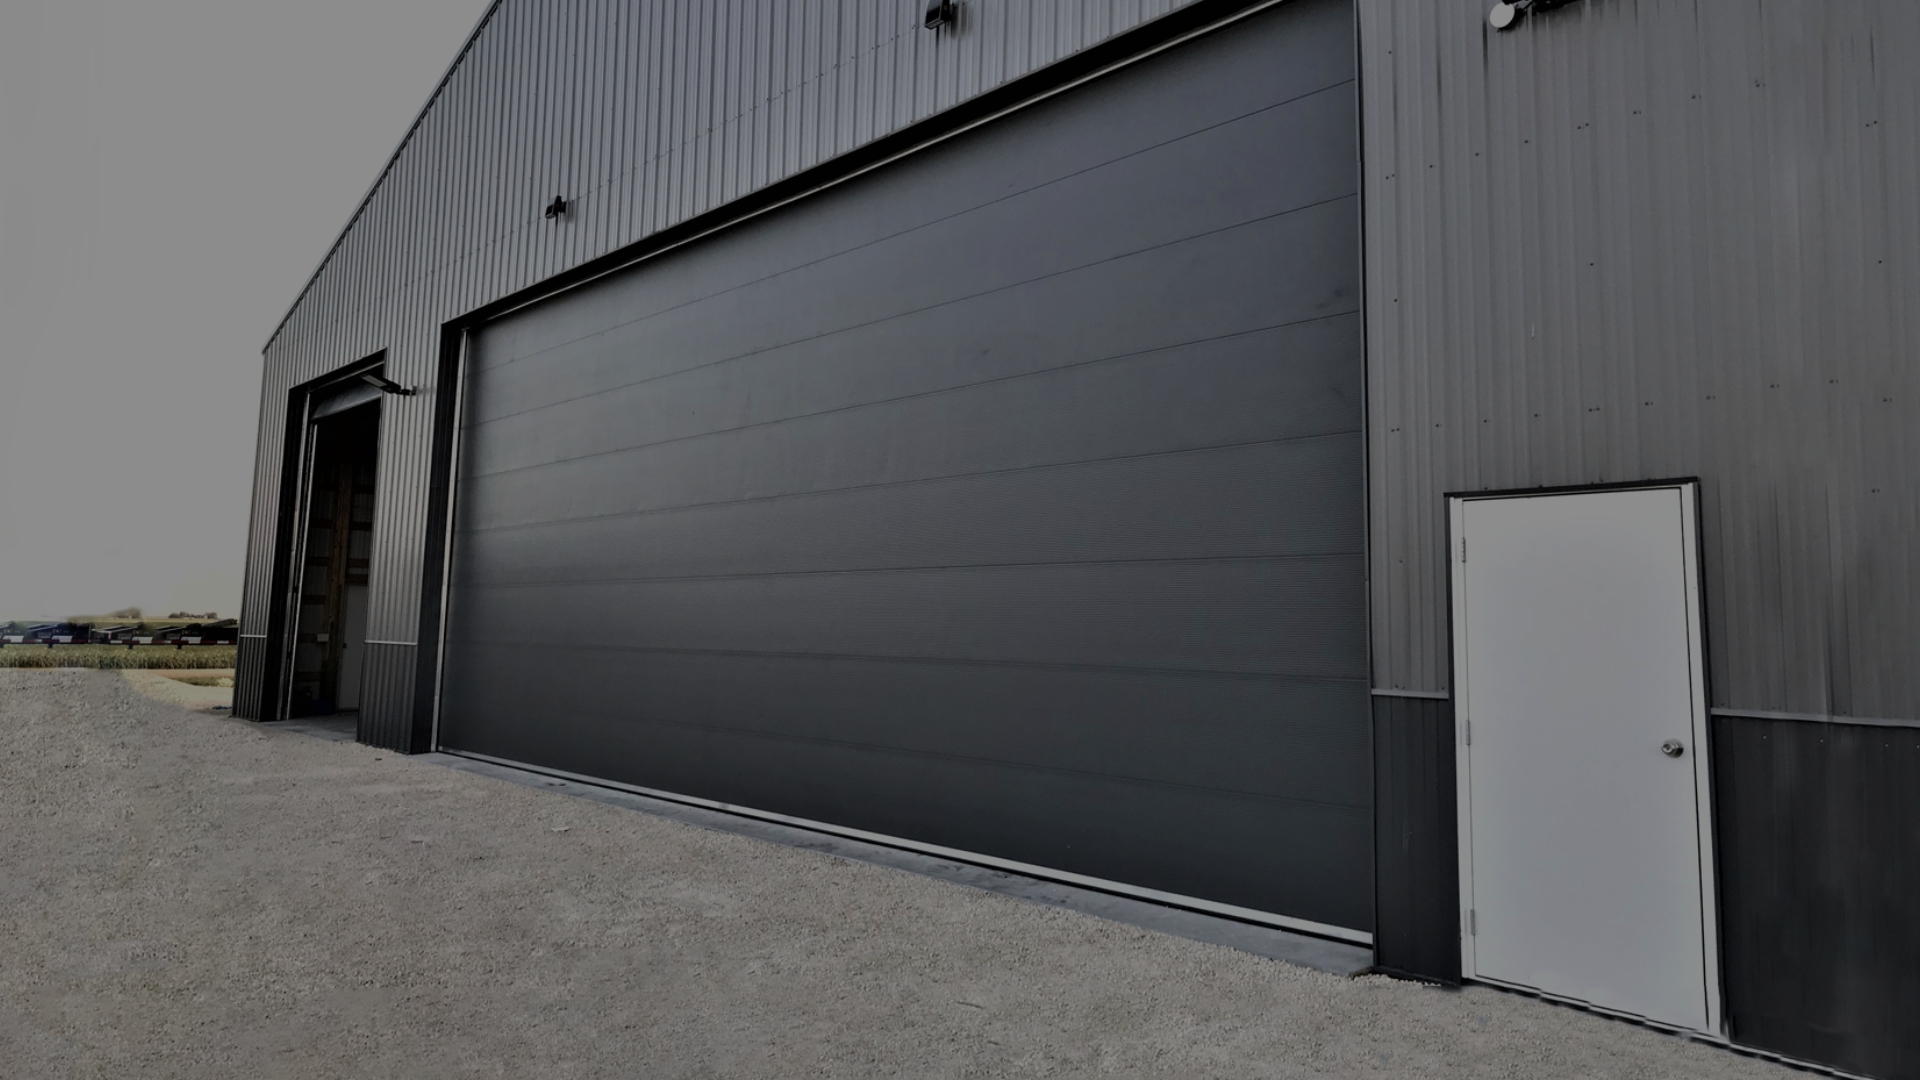 Industrial garage doors of a warehouse